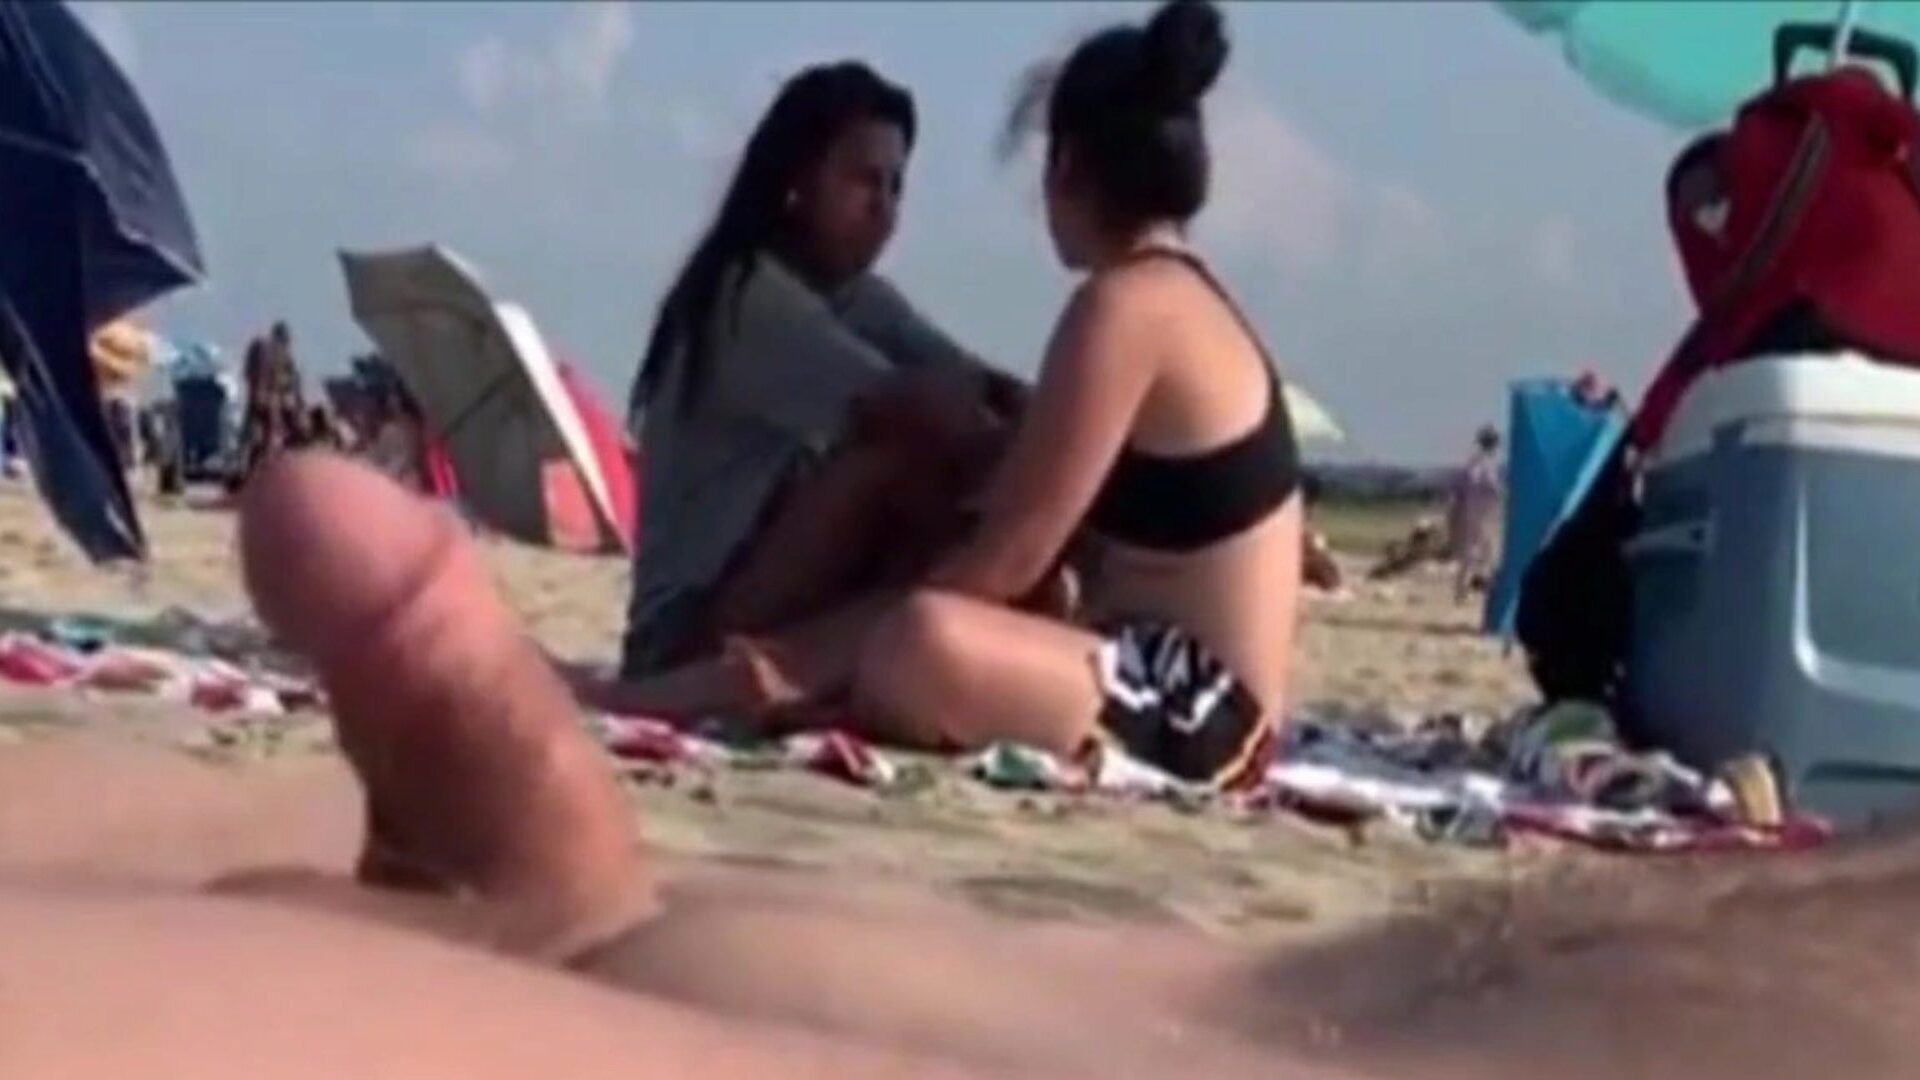 dwie dziewczyny patrzą na mojego mężczyznę na publicznej plaży dwie dziewczyny obsługują mnie przy gałce, puść je ..